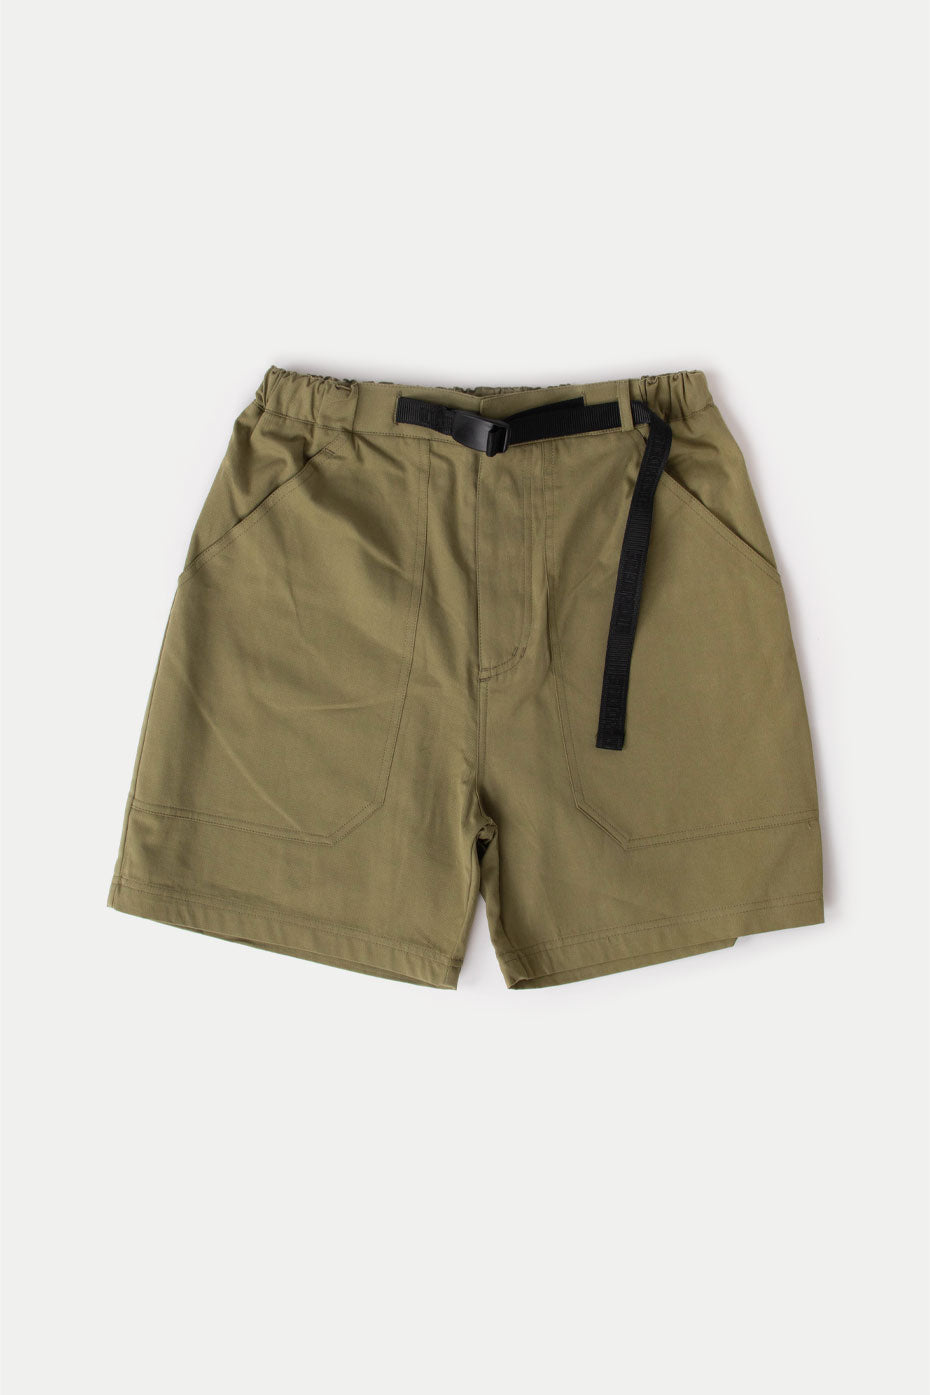 hikerdelic-khaki-worker-shorts